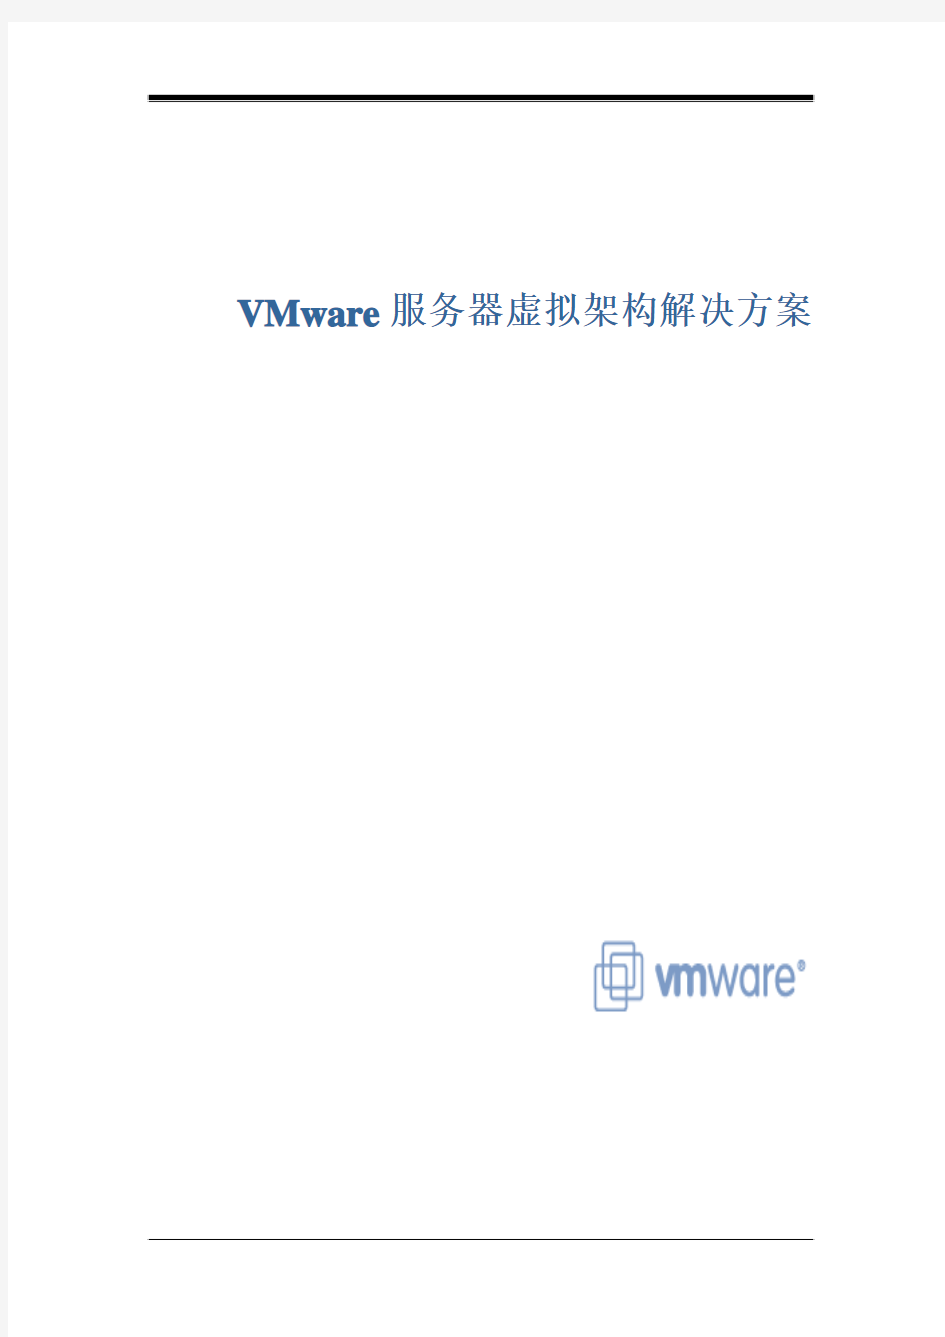 VMware服务器解决方案